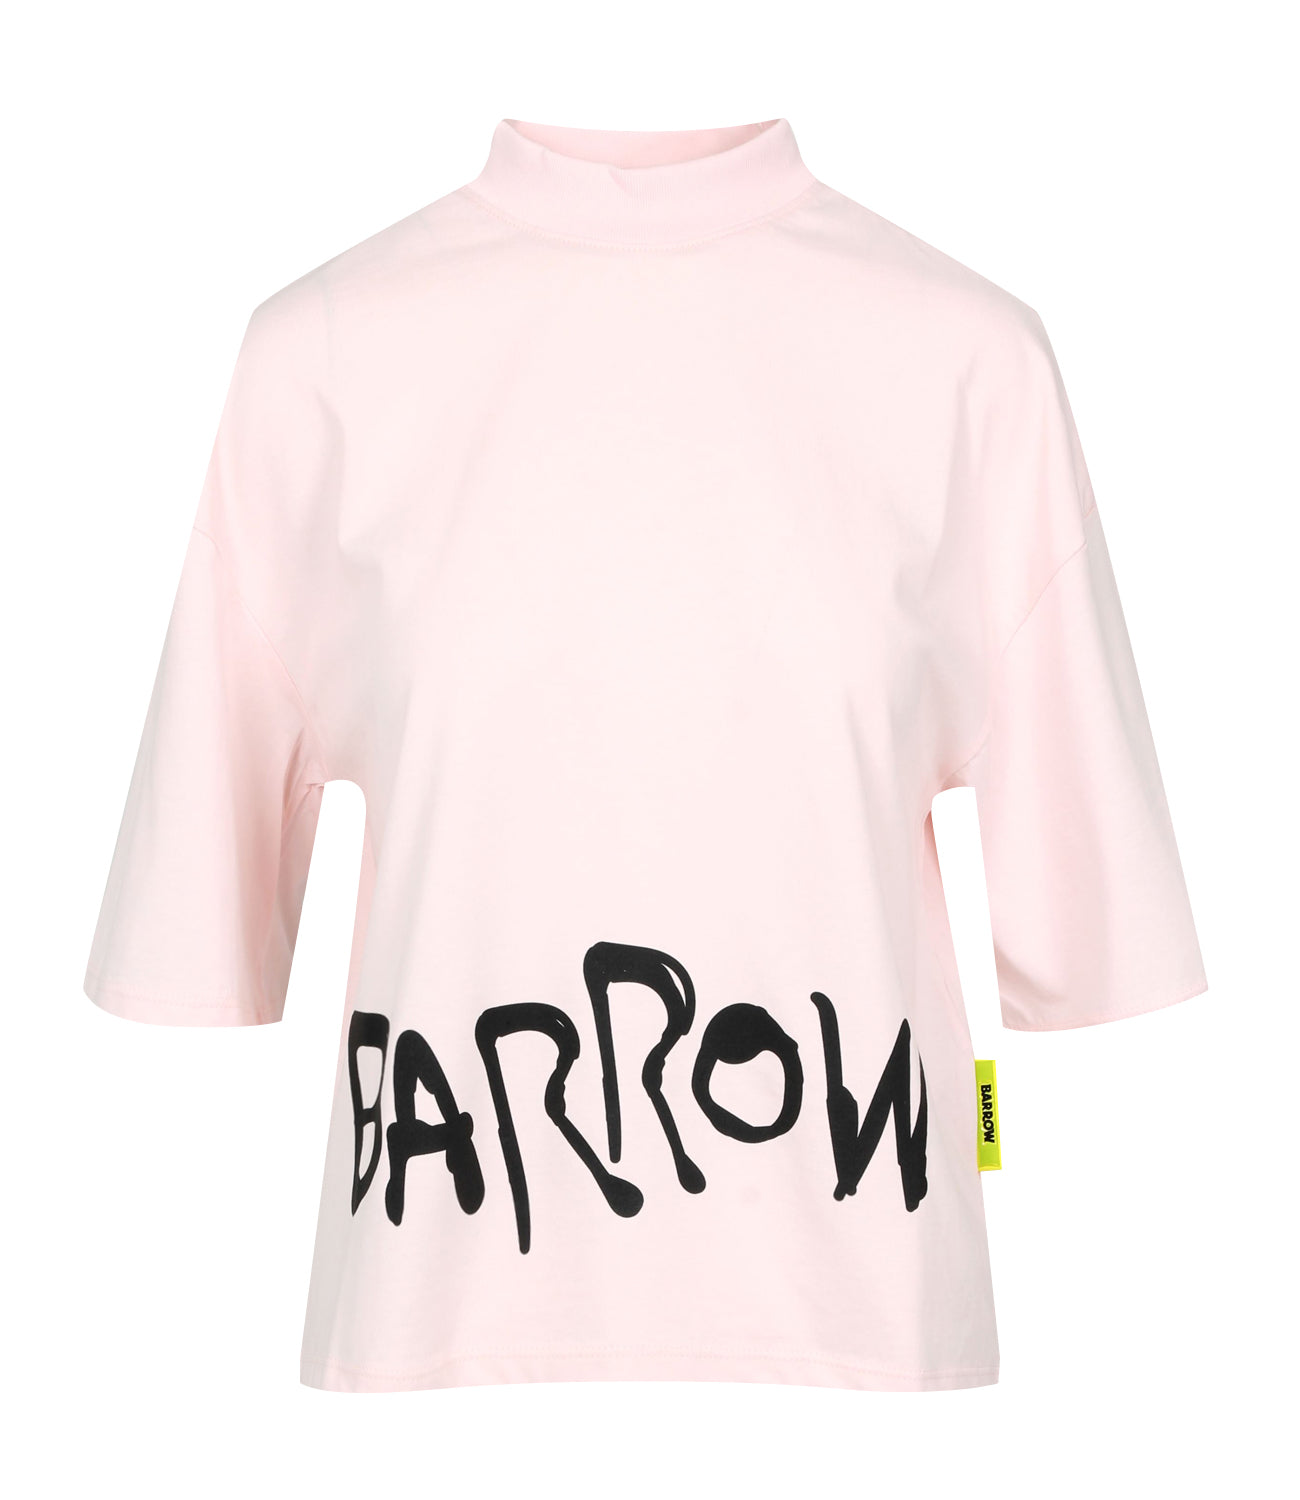 Barrow | Light Pink T-Shirt